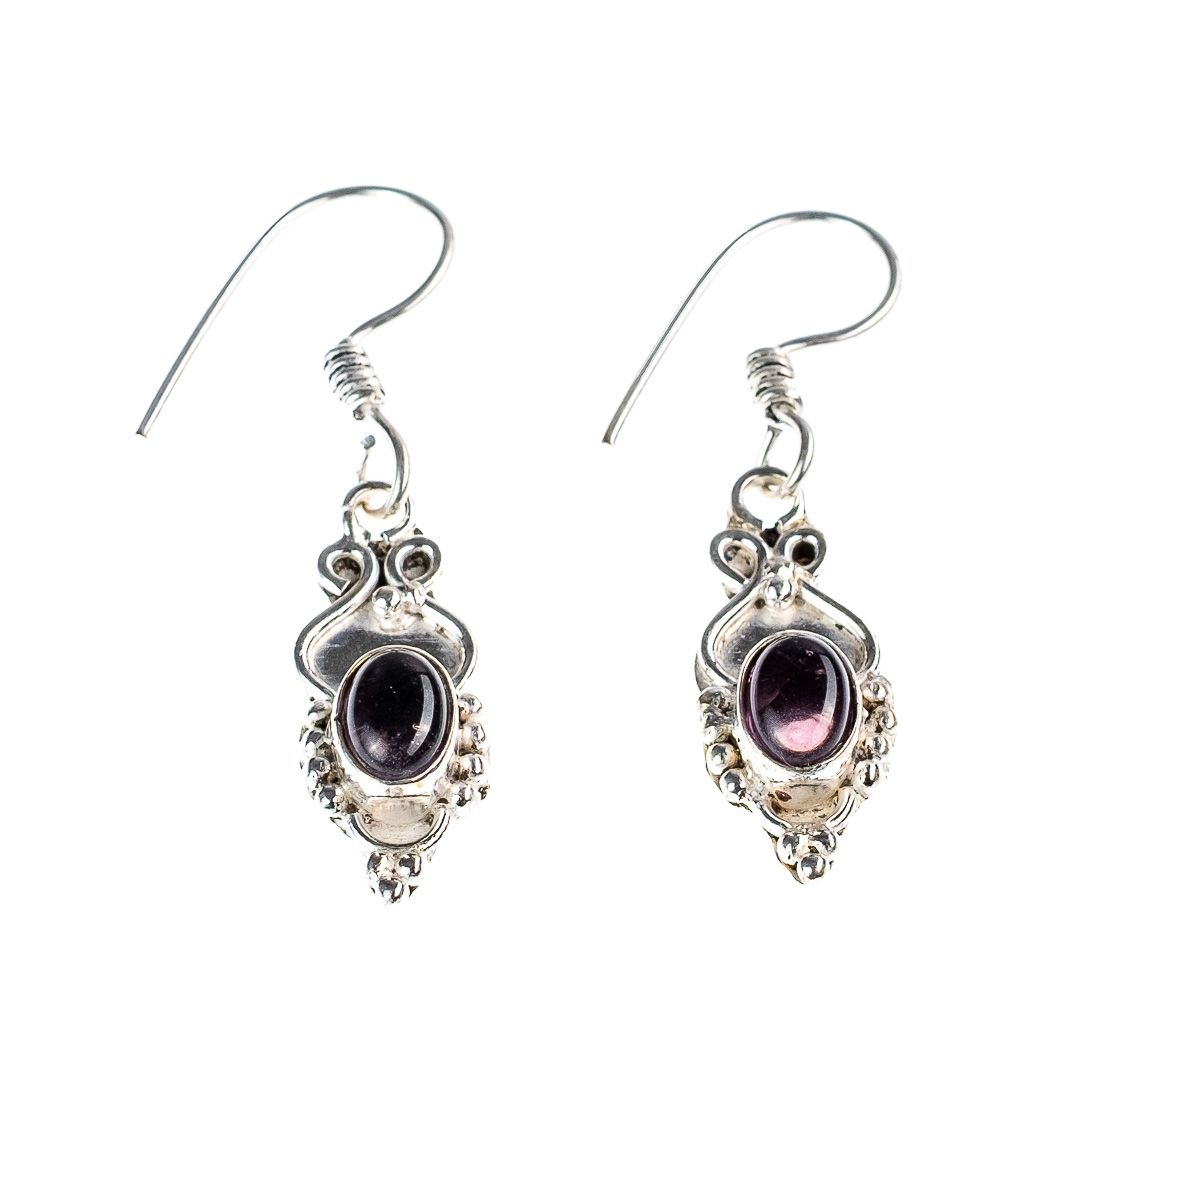 German silver earrings Putrim - Amethyst India